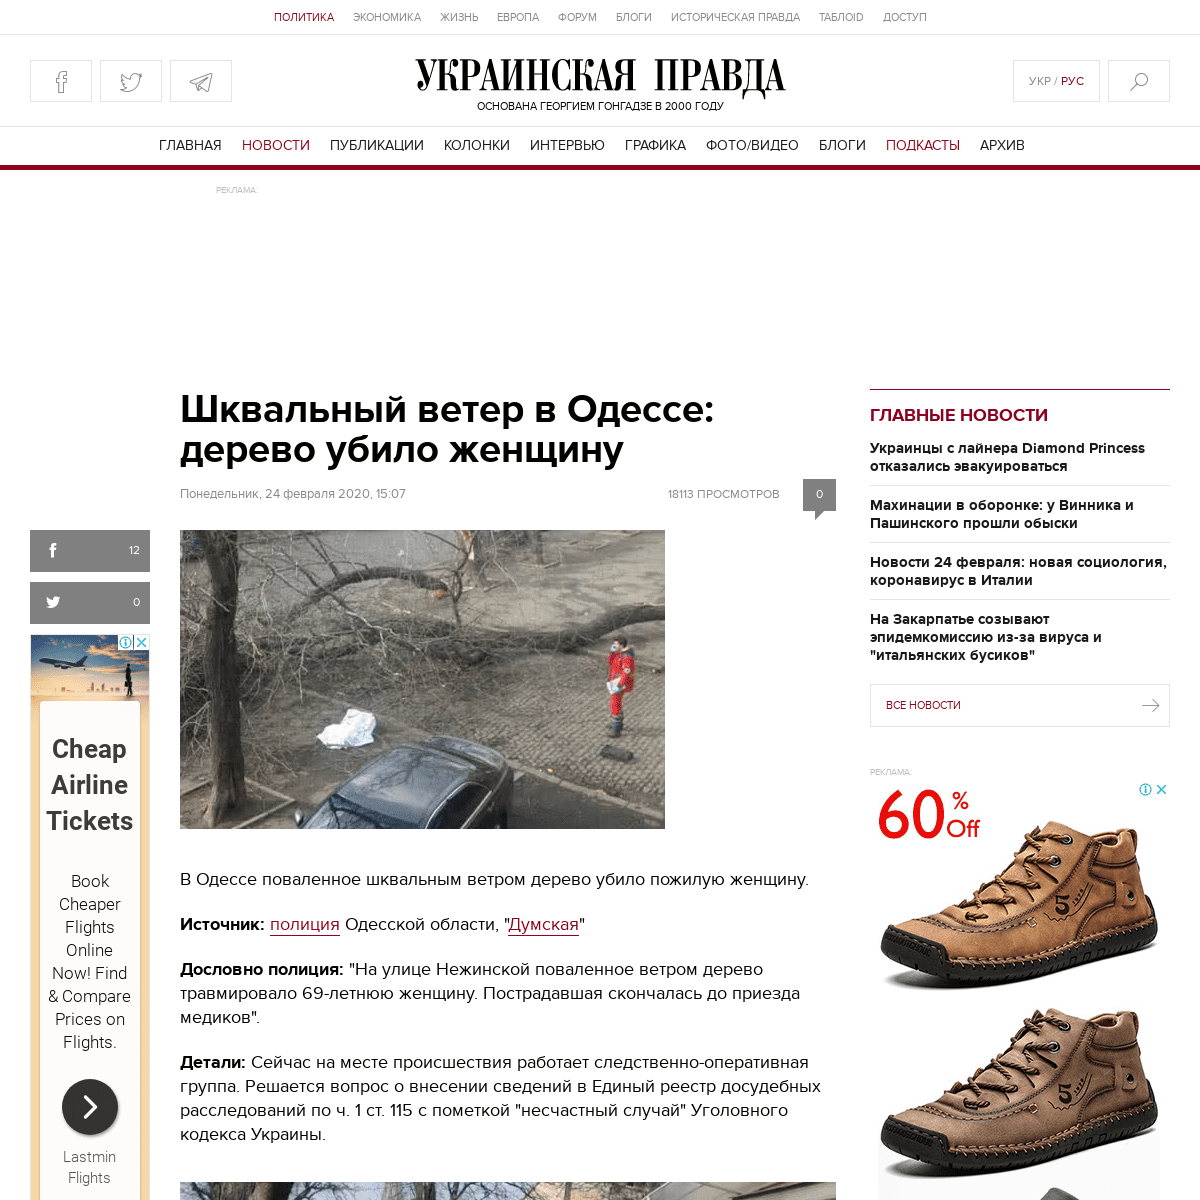 A complete backup of www.pravda.com.ua/rus/news/2020/02/24/7241499/